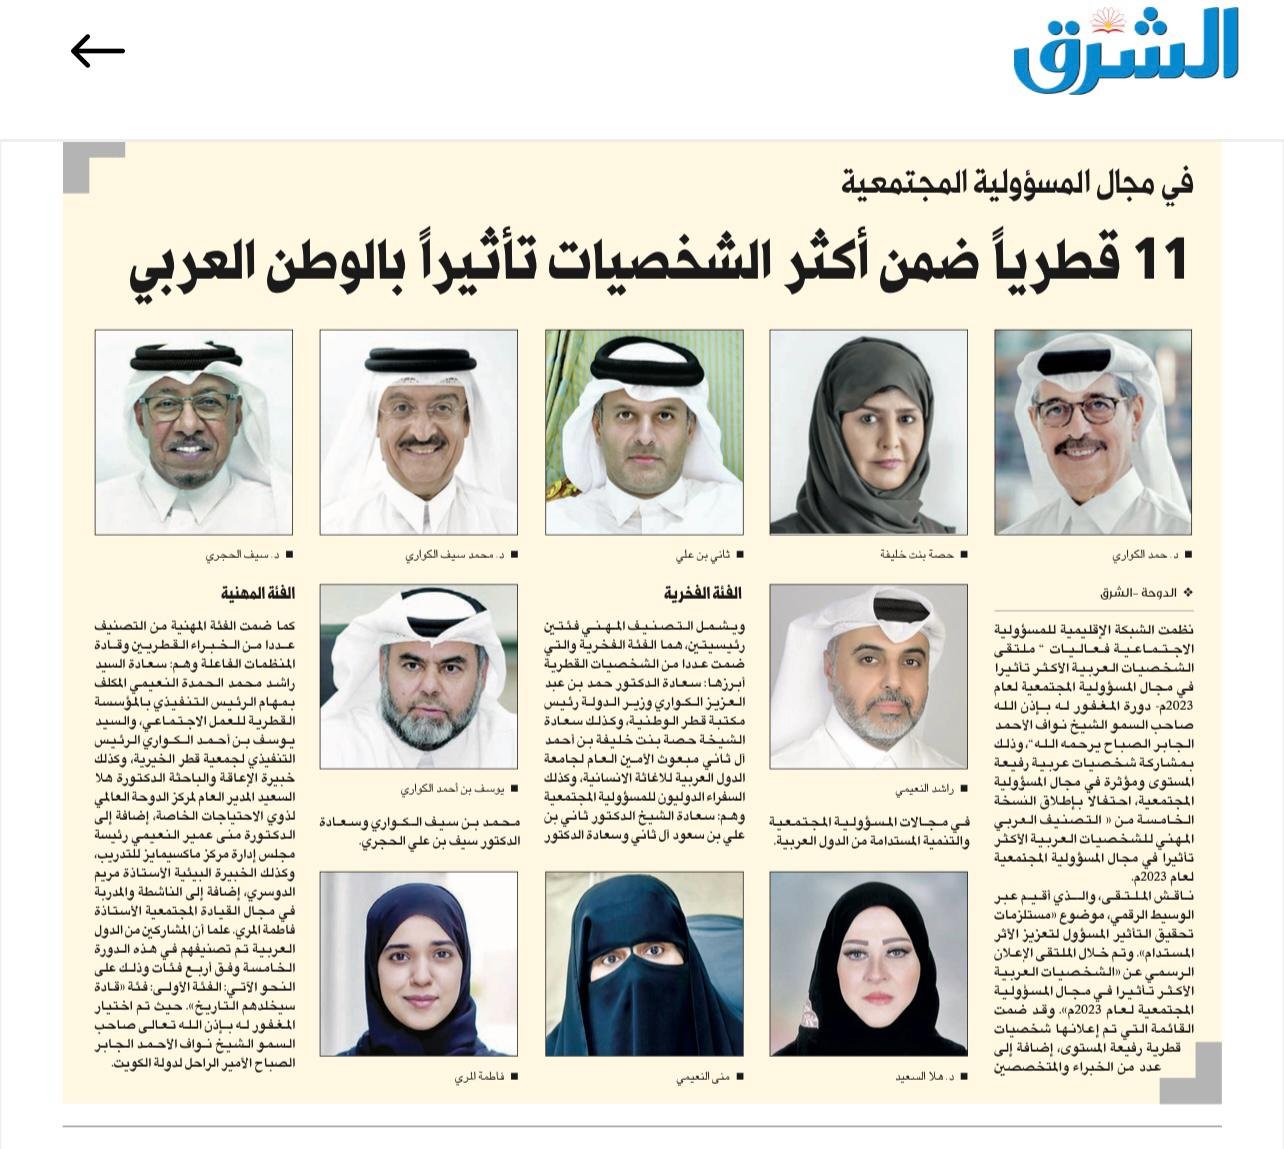 اختيار دكتورة منى النعيمي ضمن الشخصيات العربية الأكثرتأثيراً في مجال المسؤولية المجتمعية لعام 2024